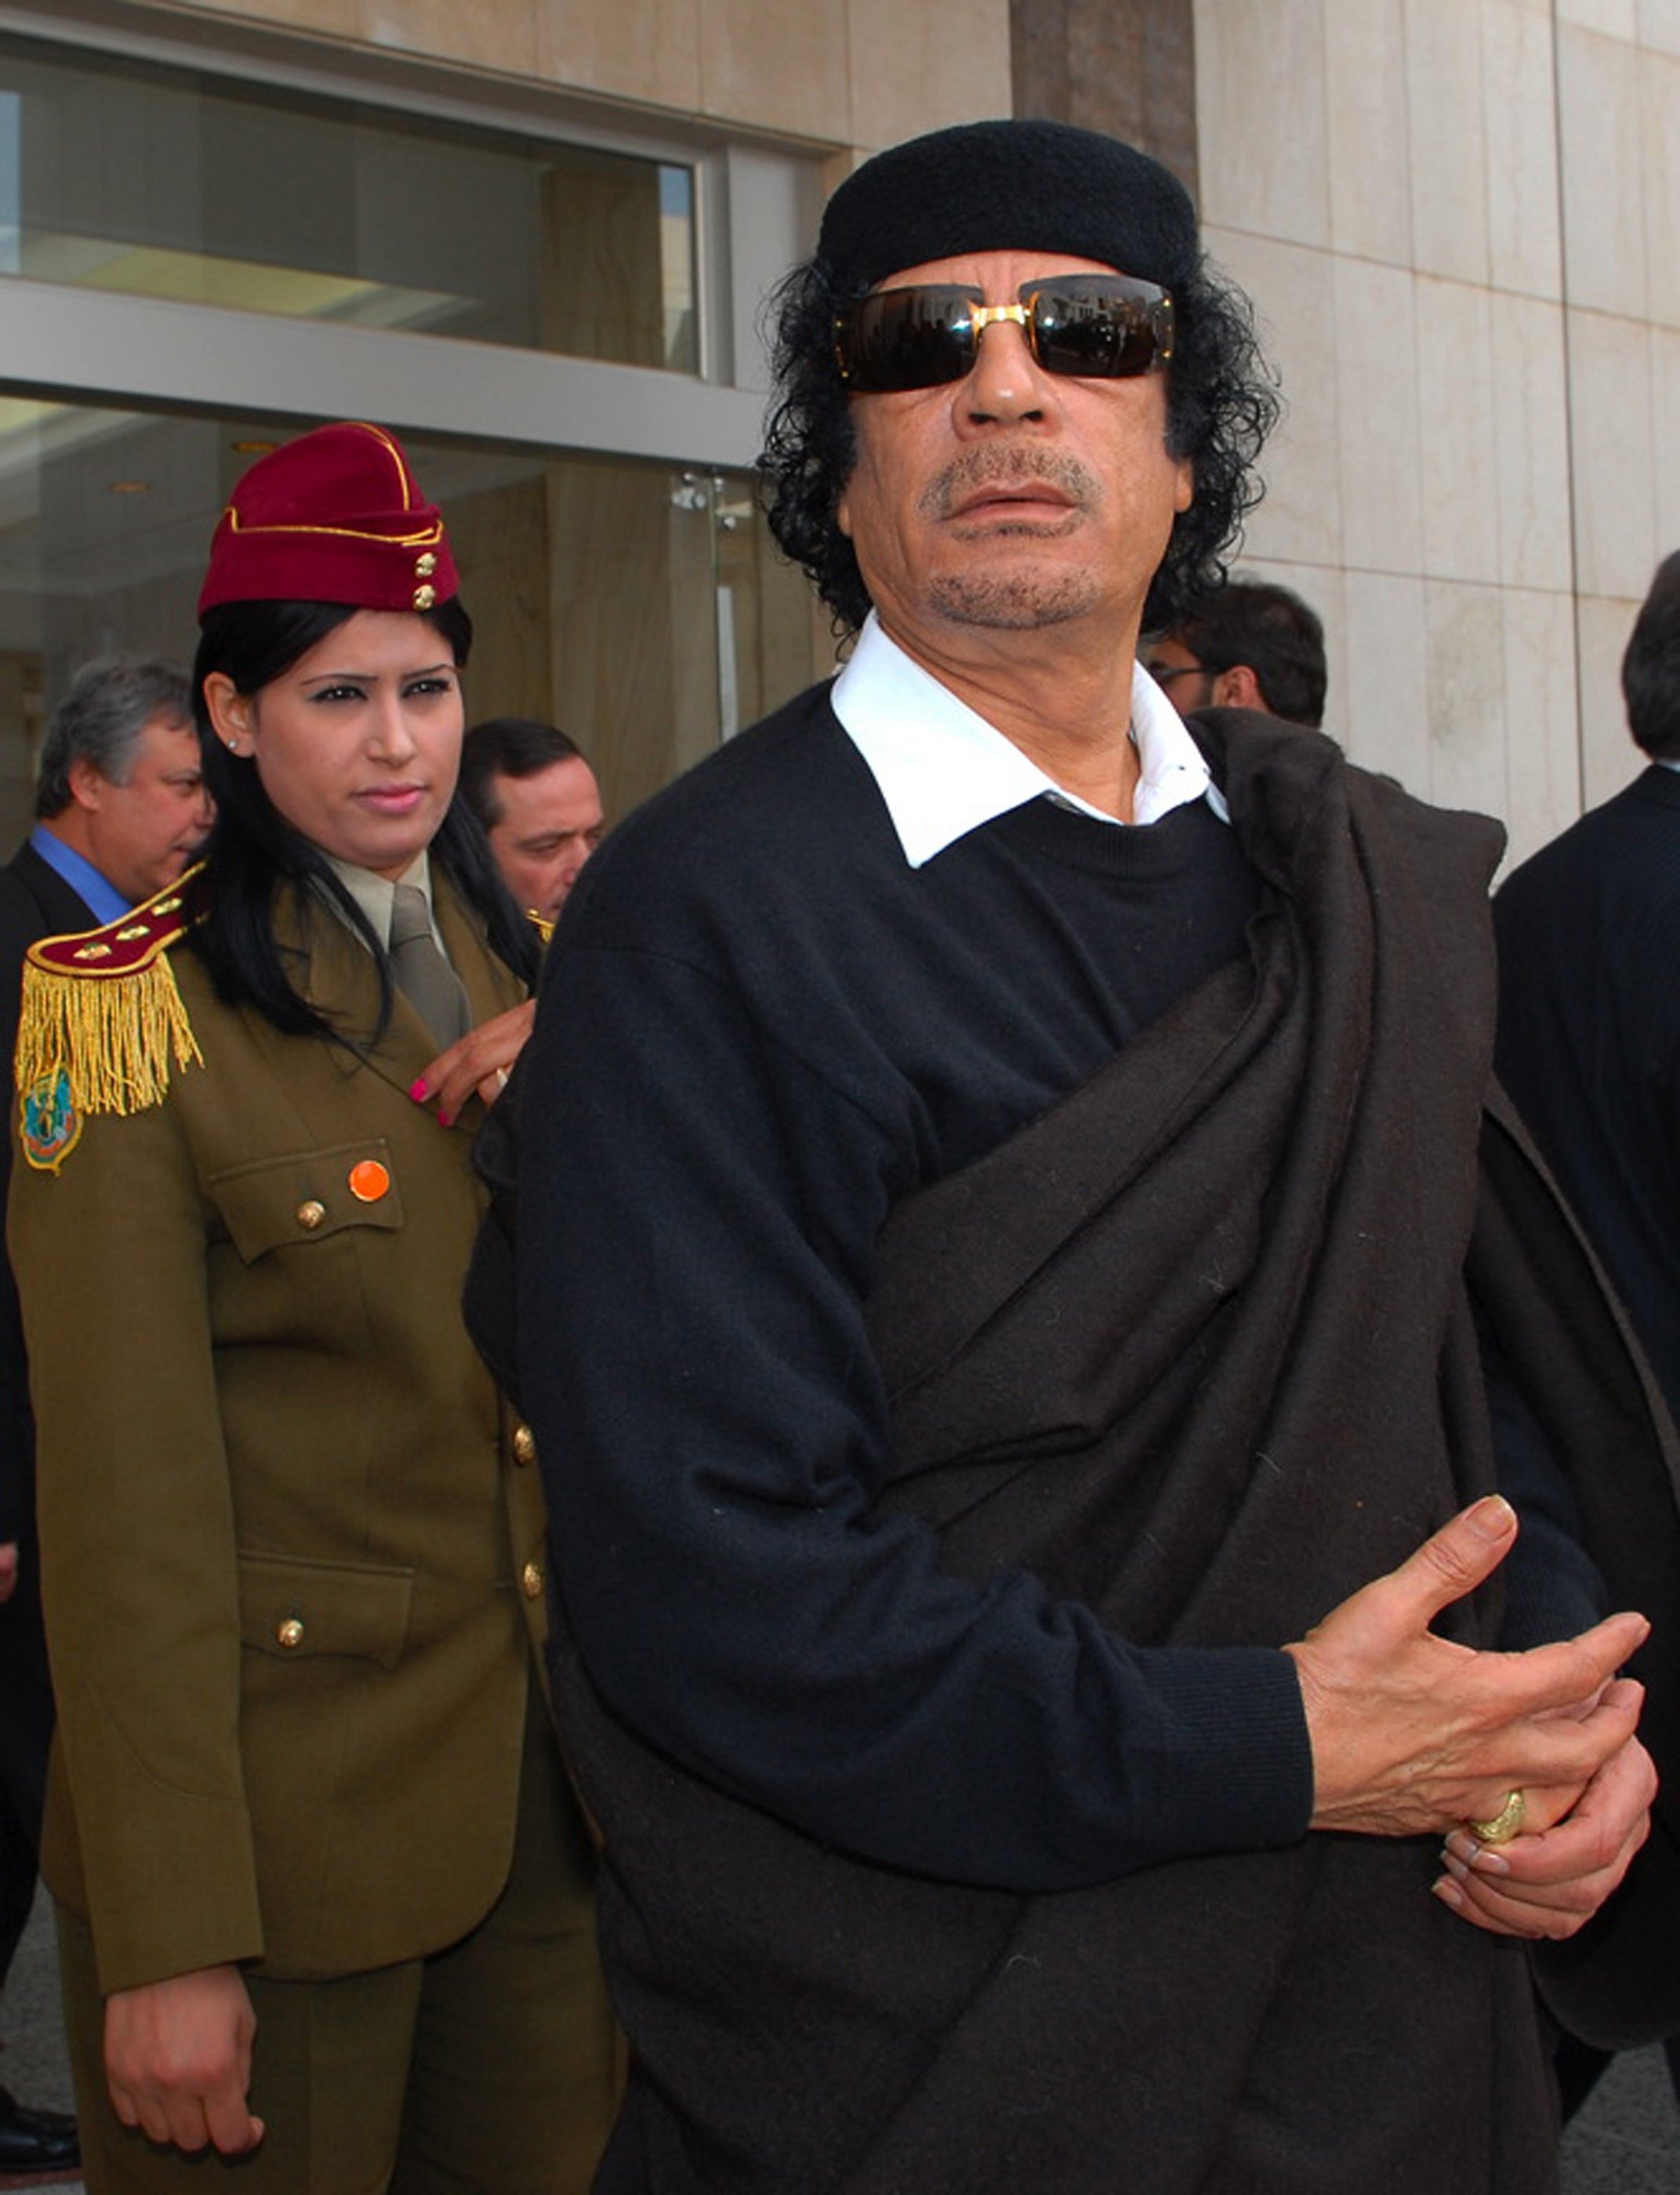 Доклад по теме Муамар аль Каддафи